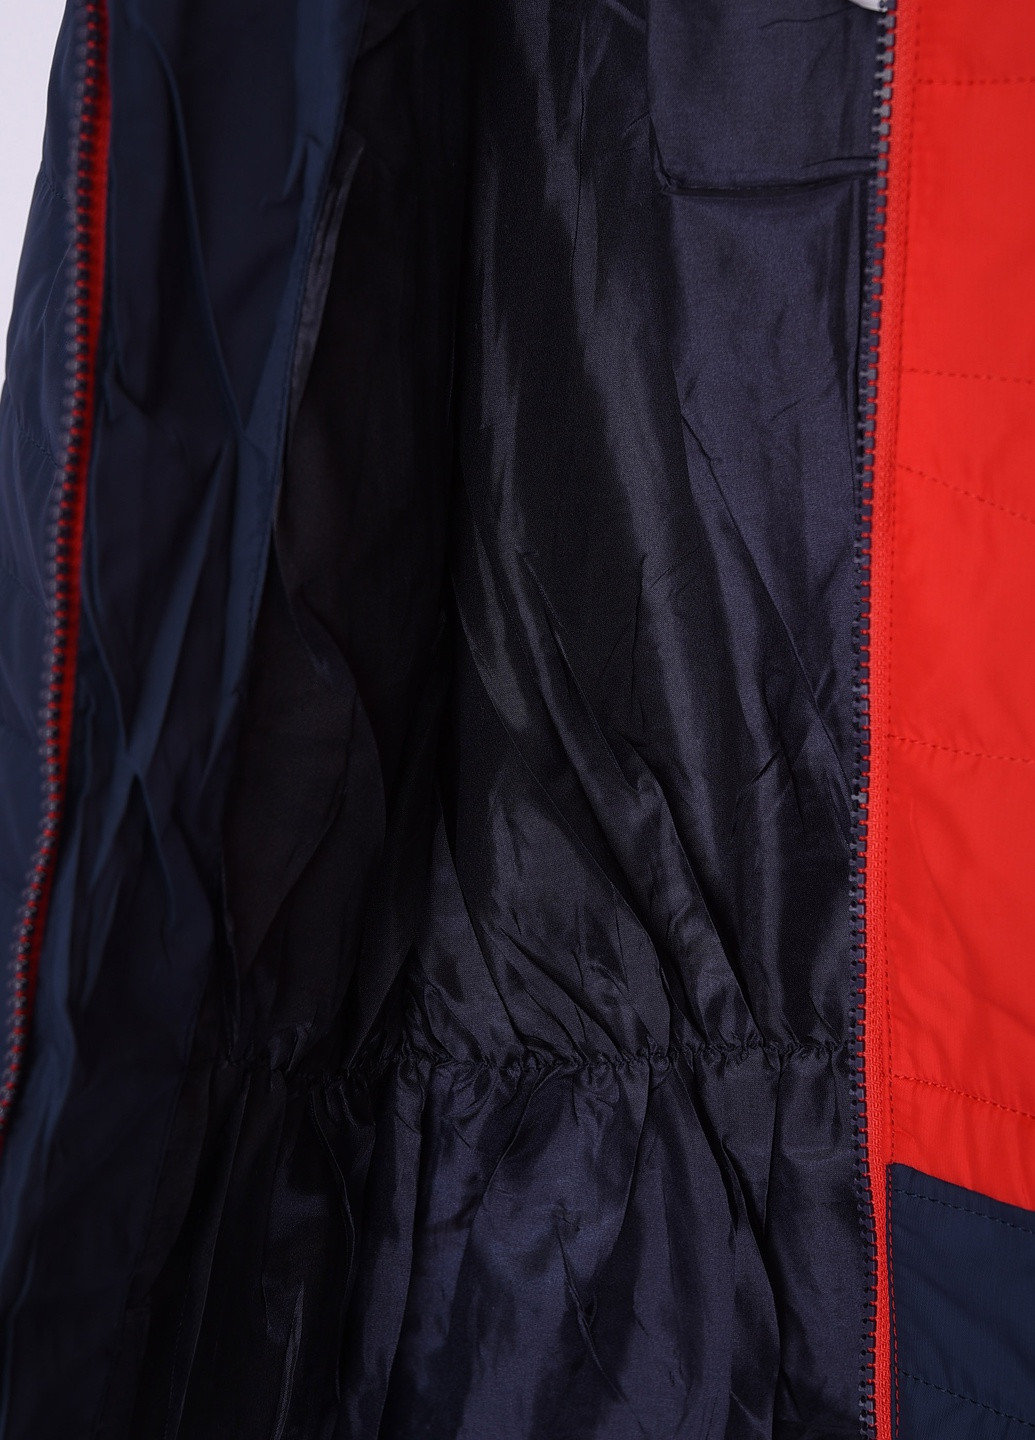 Красная демисезонная куртка детская демисезон красно - синяя с капюшоном Let's Shop